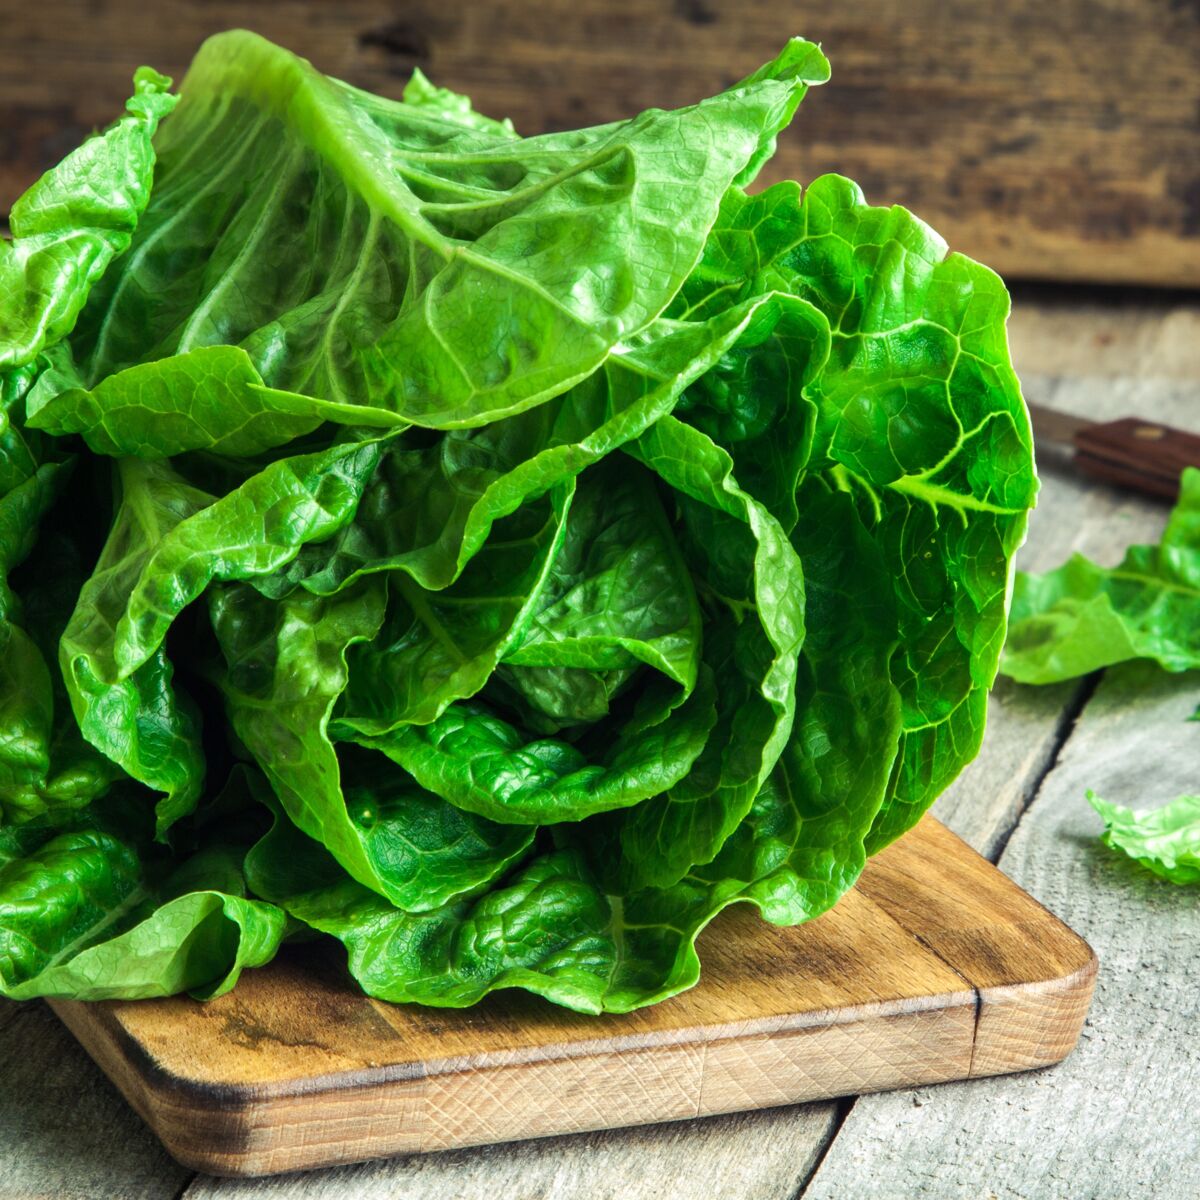 Un sac à salades pour conserver plus longtemps ses légumes